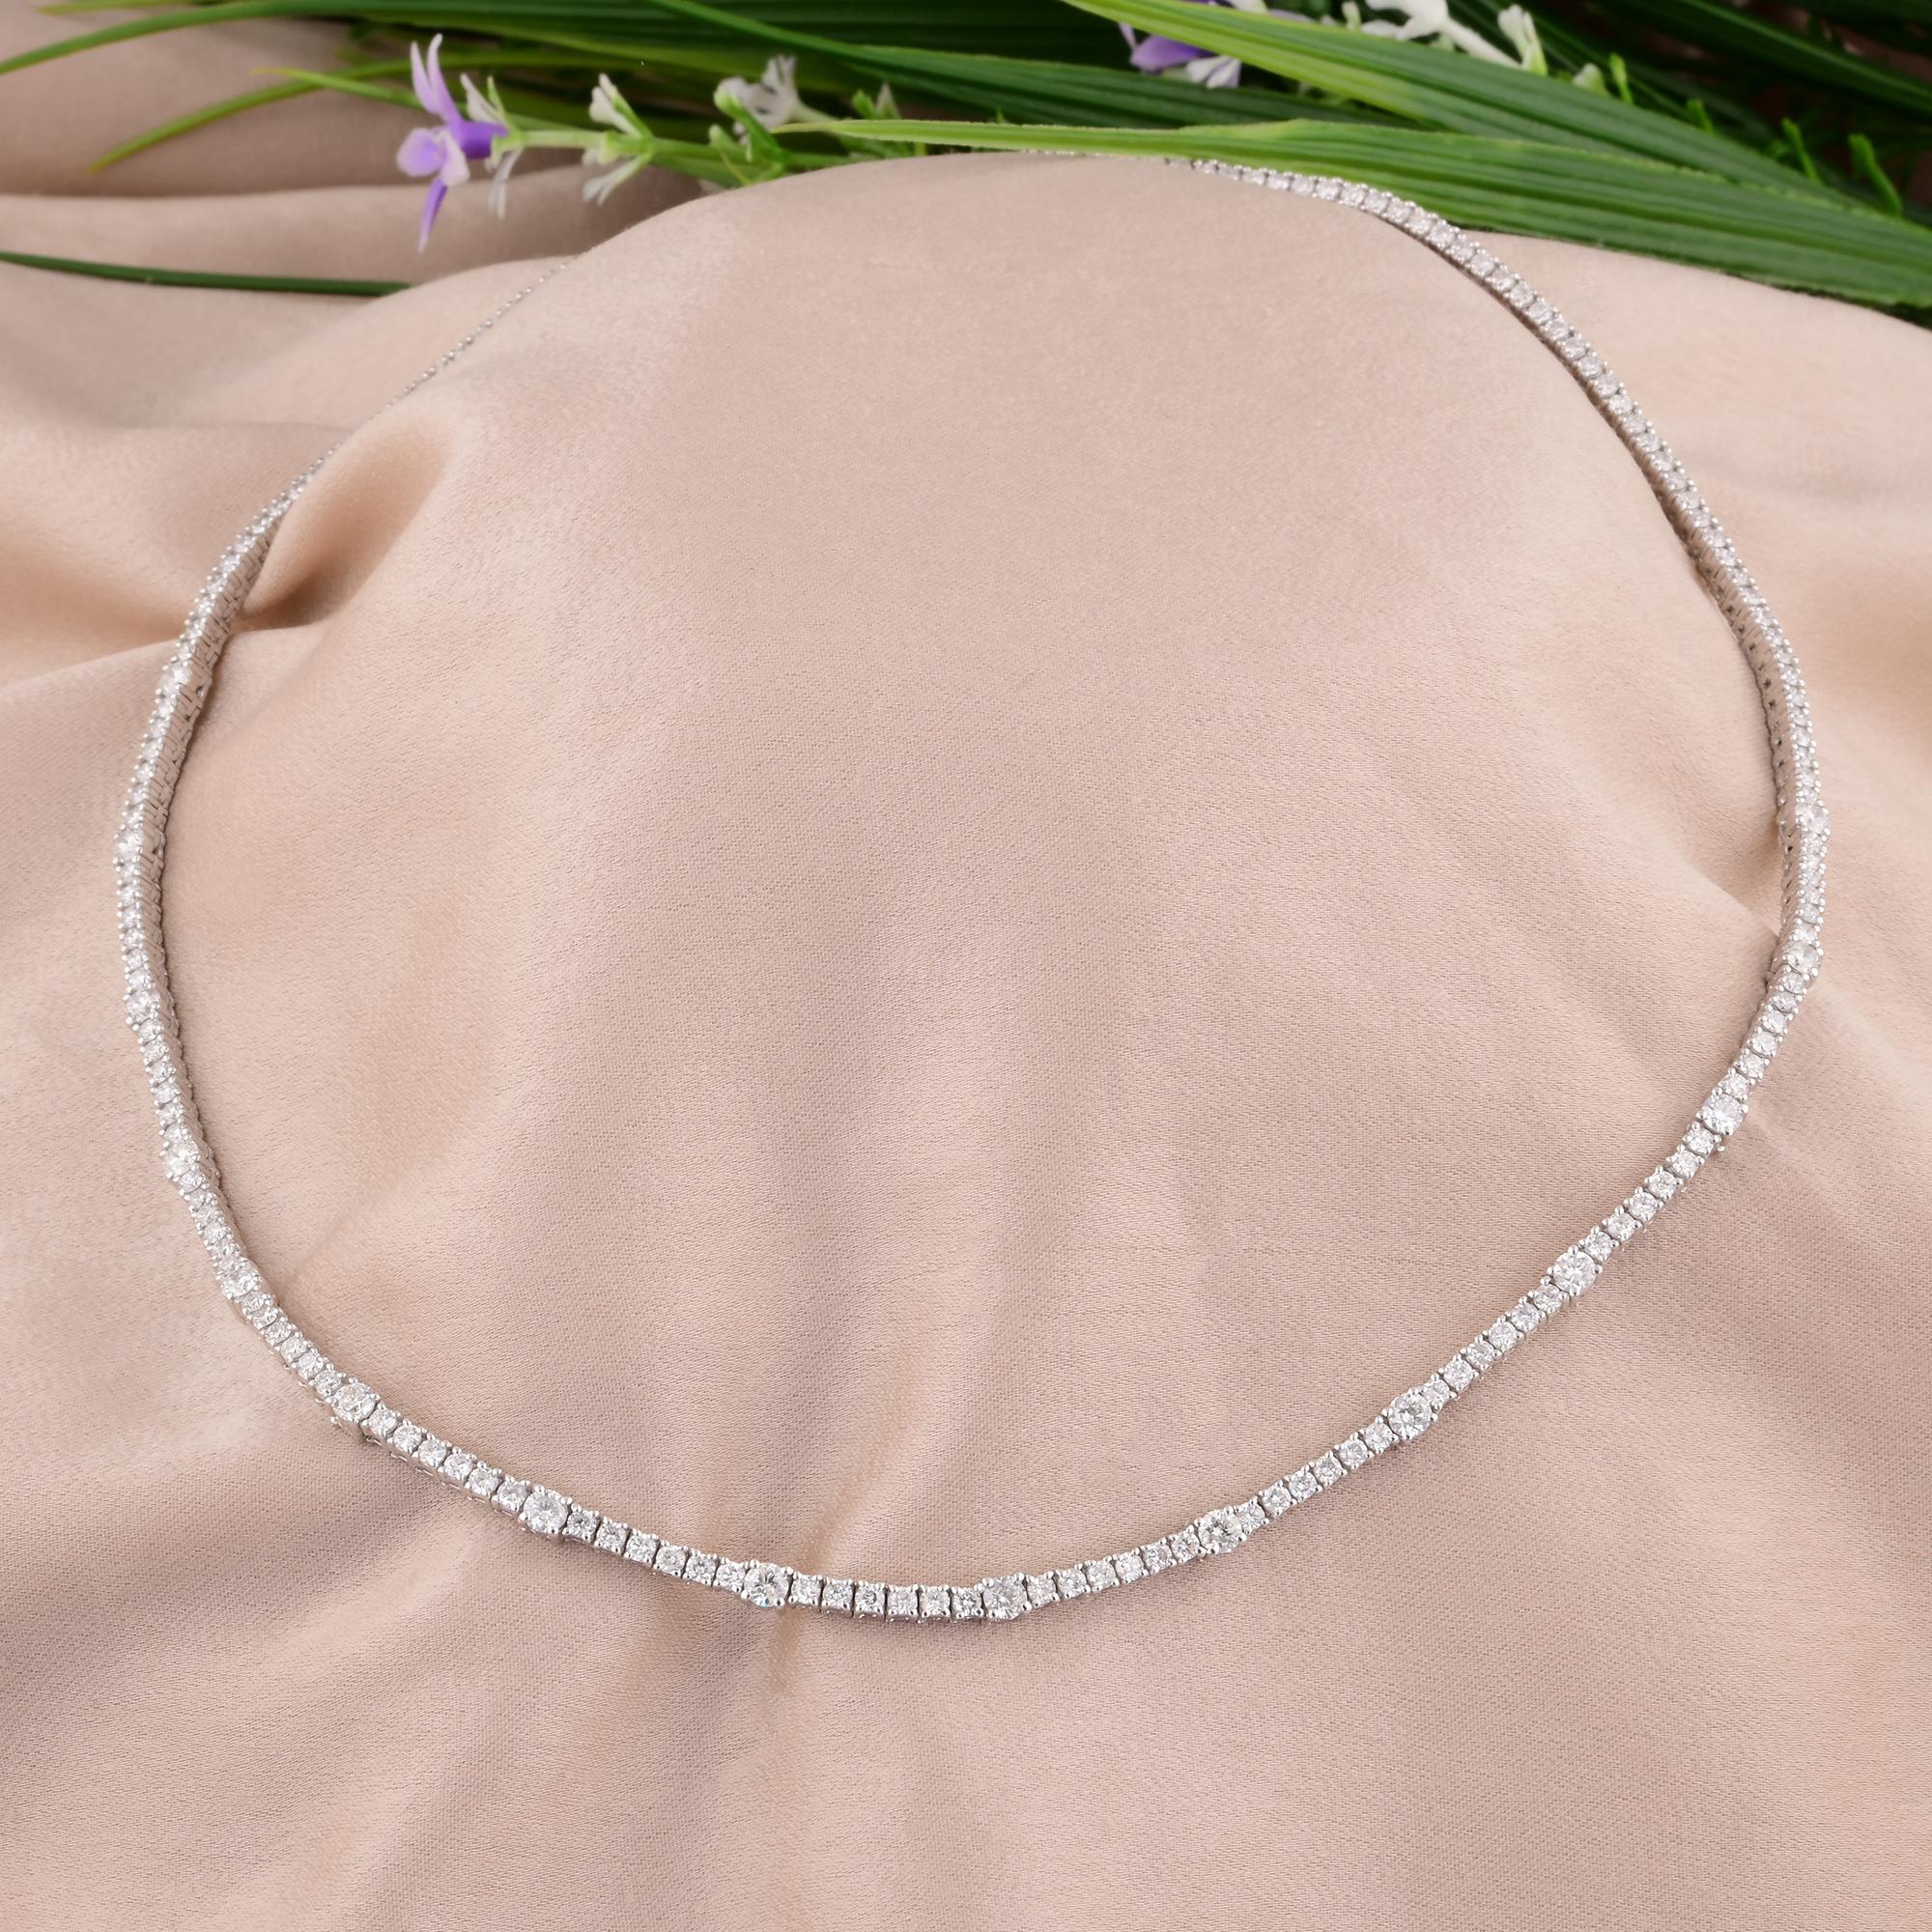 Women's Natural 5.97 Carat Round Diamond Tennis Chain 14 Karat White Gold Necklace Fine For Sale